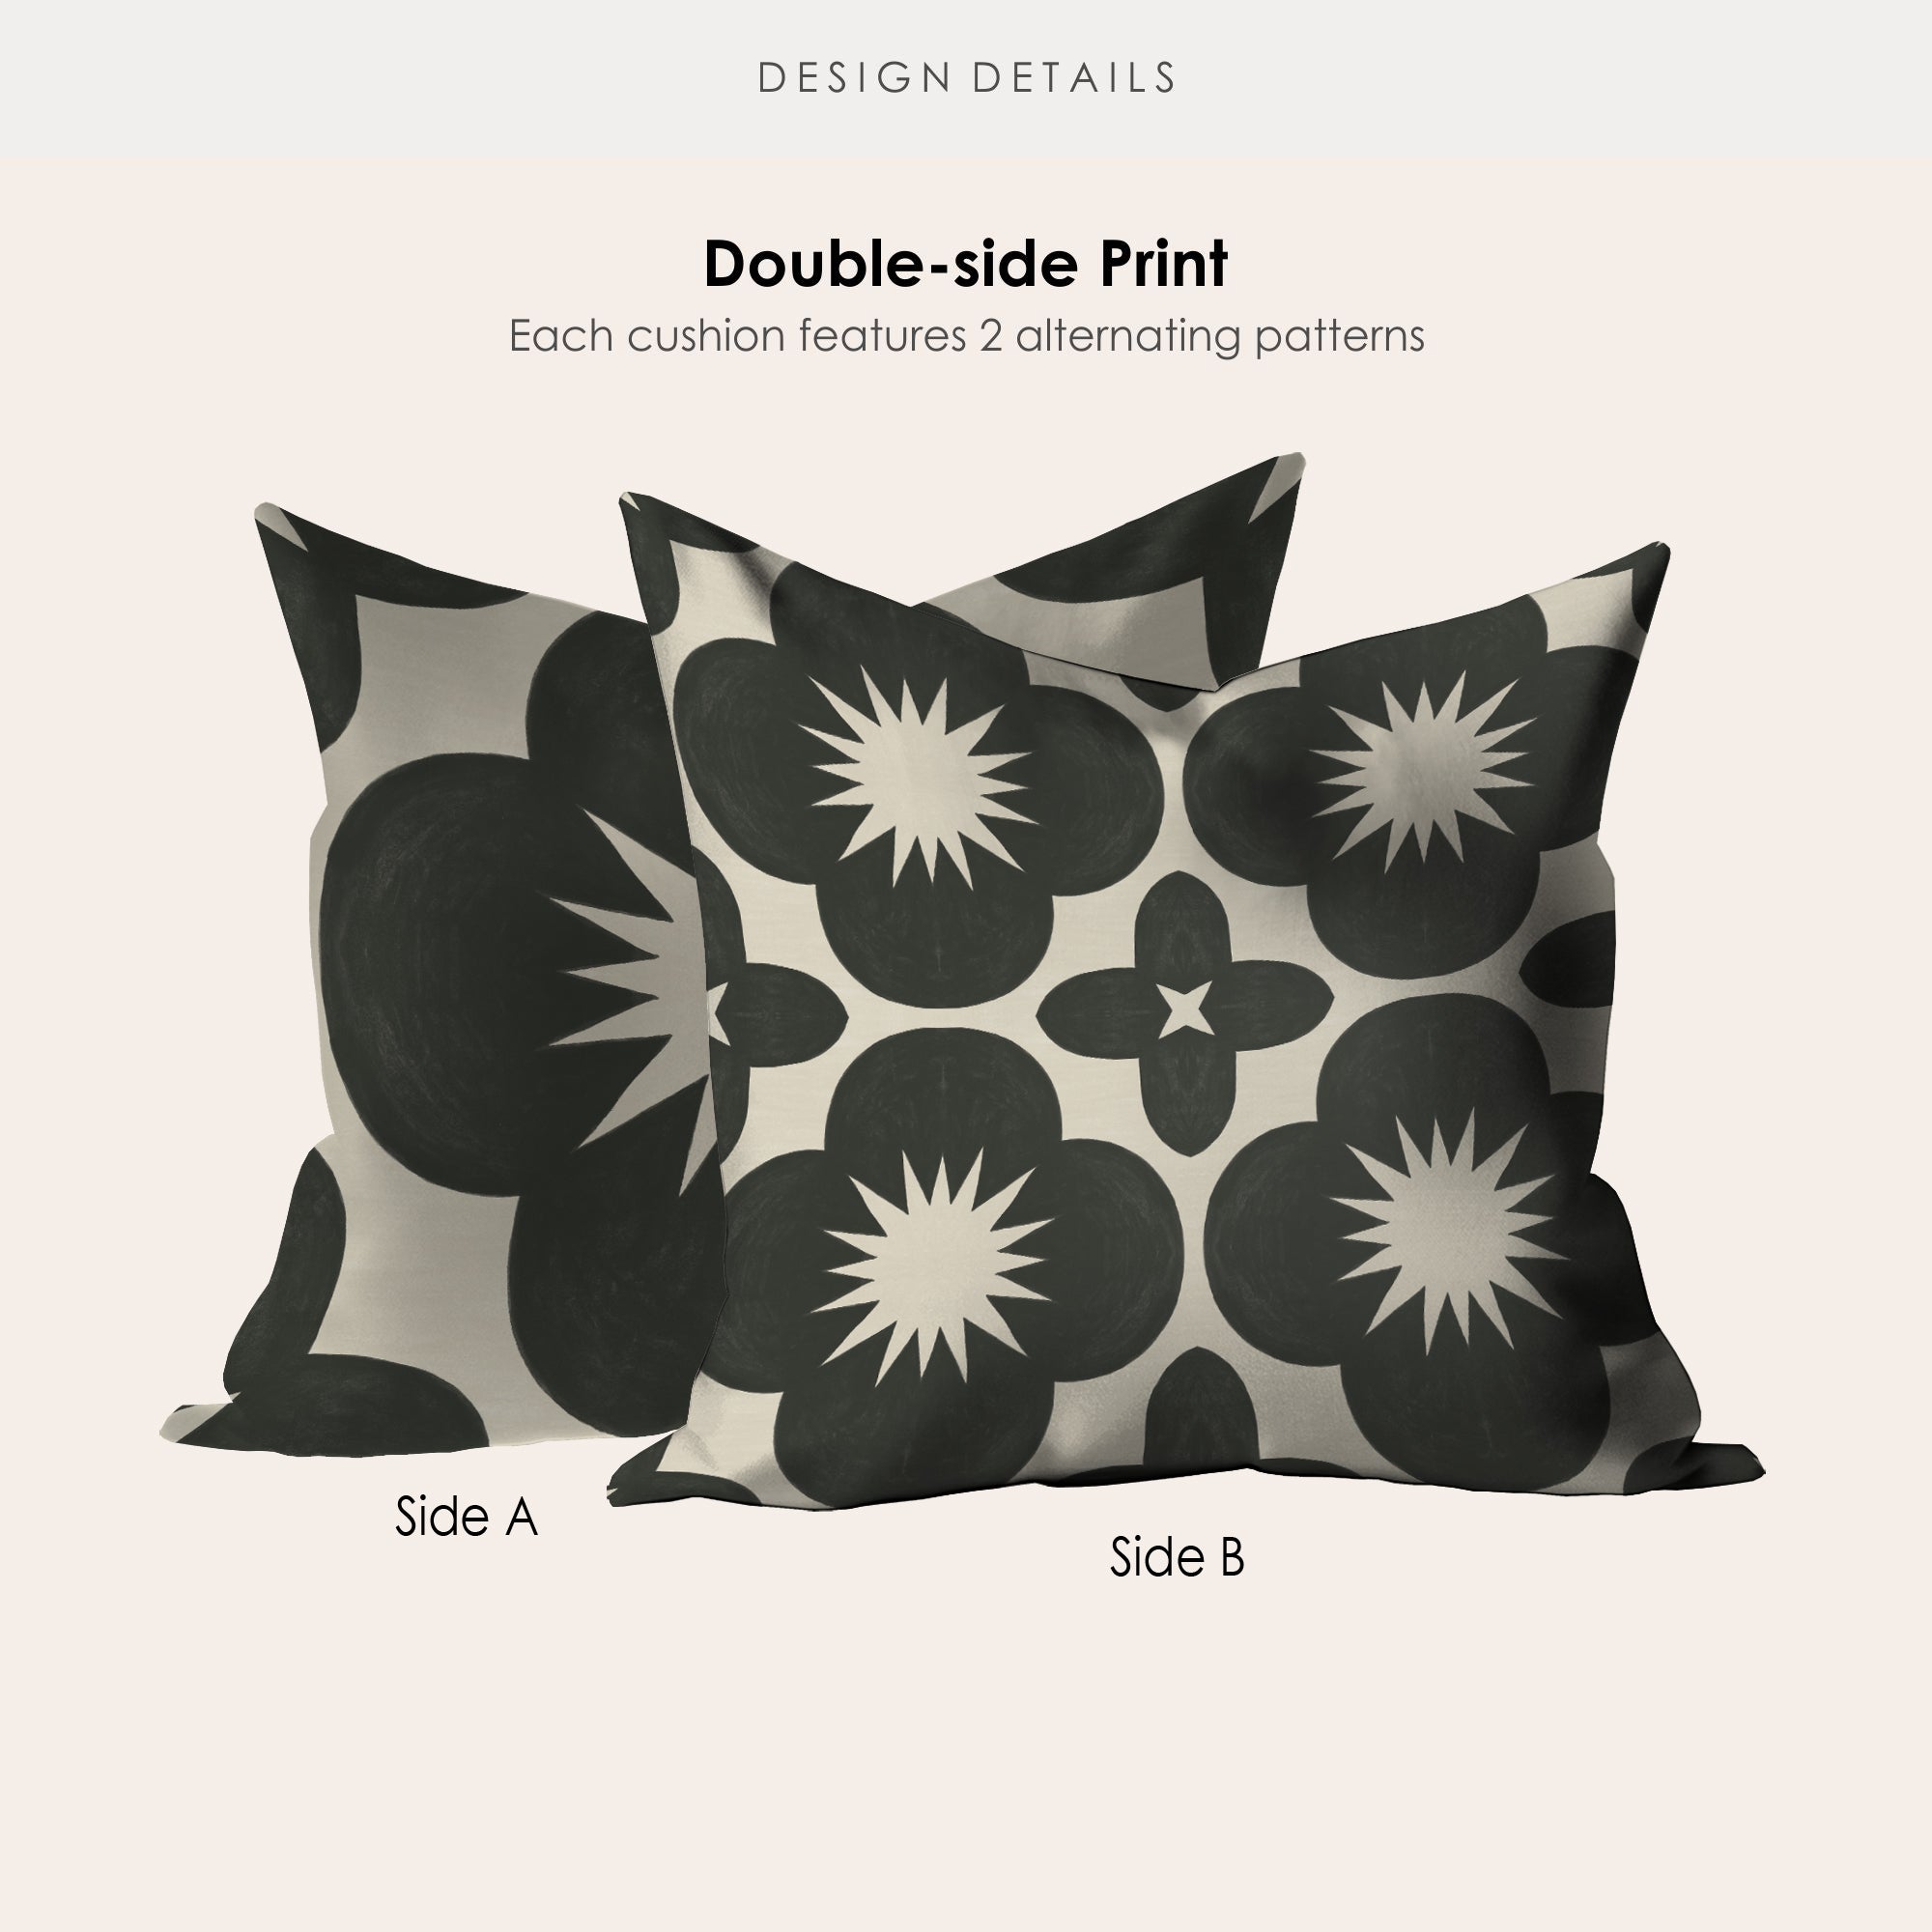 Toledo Graphite Microsuede Square Pillow Cover